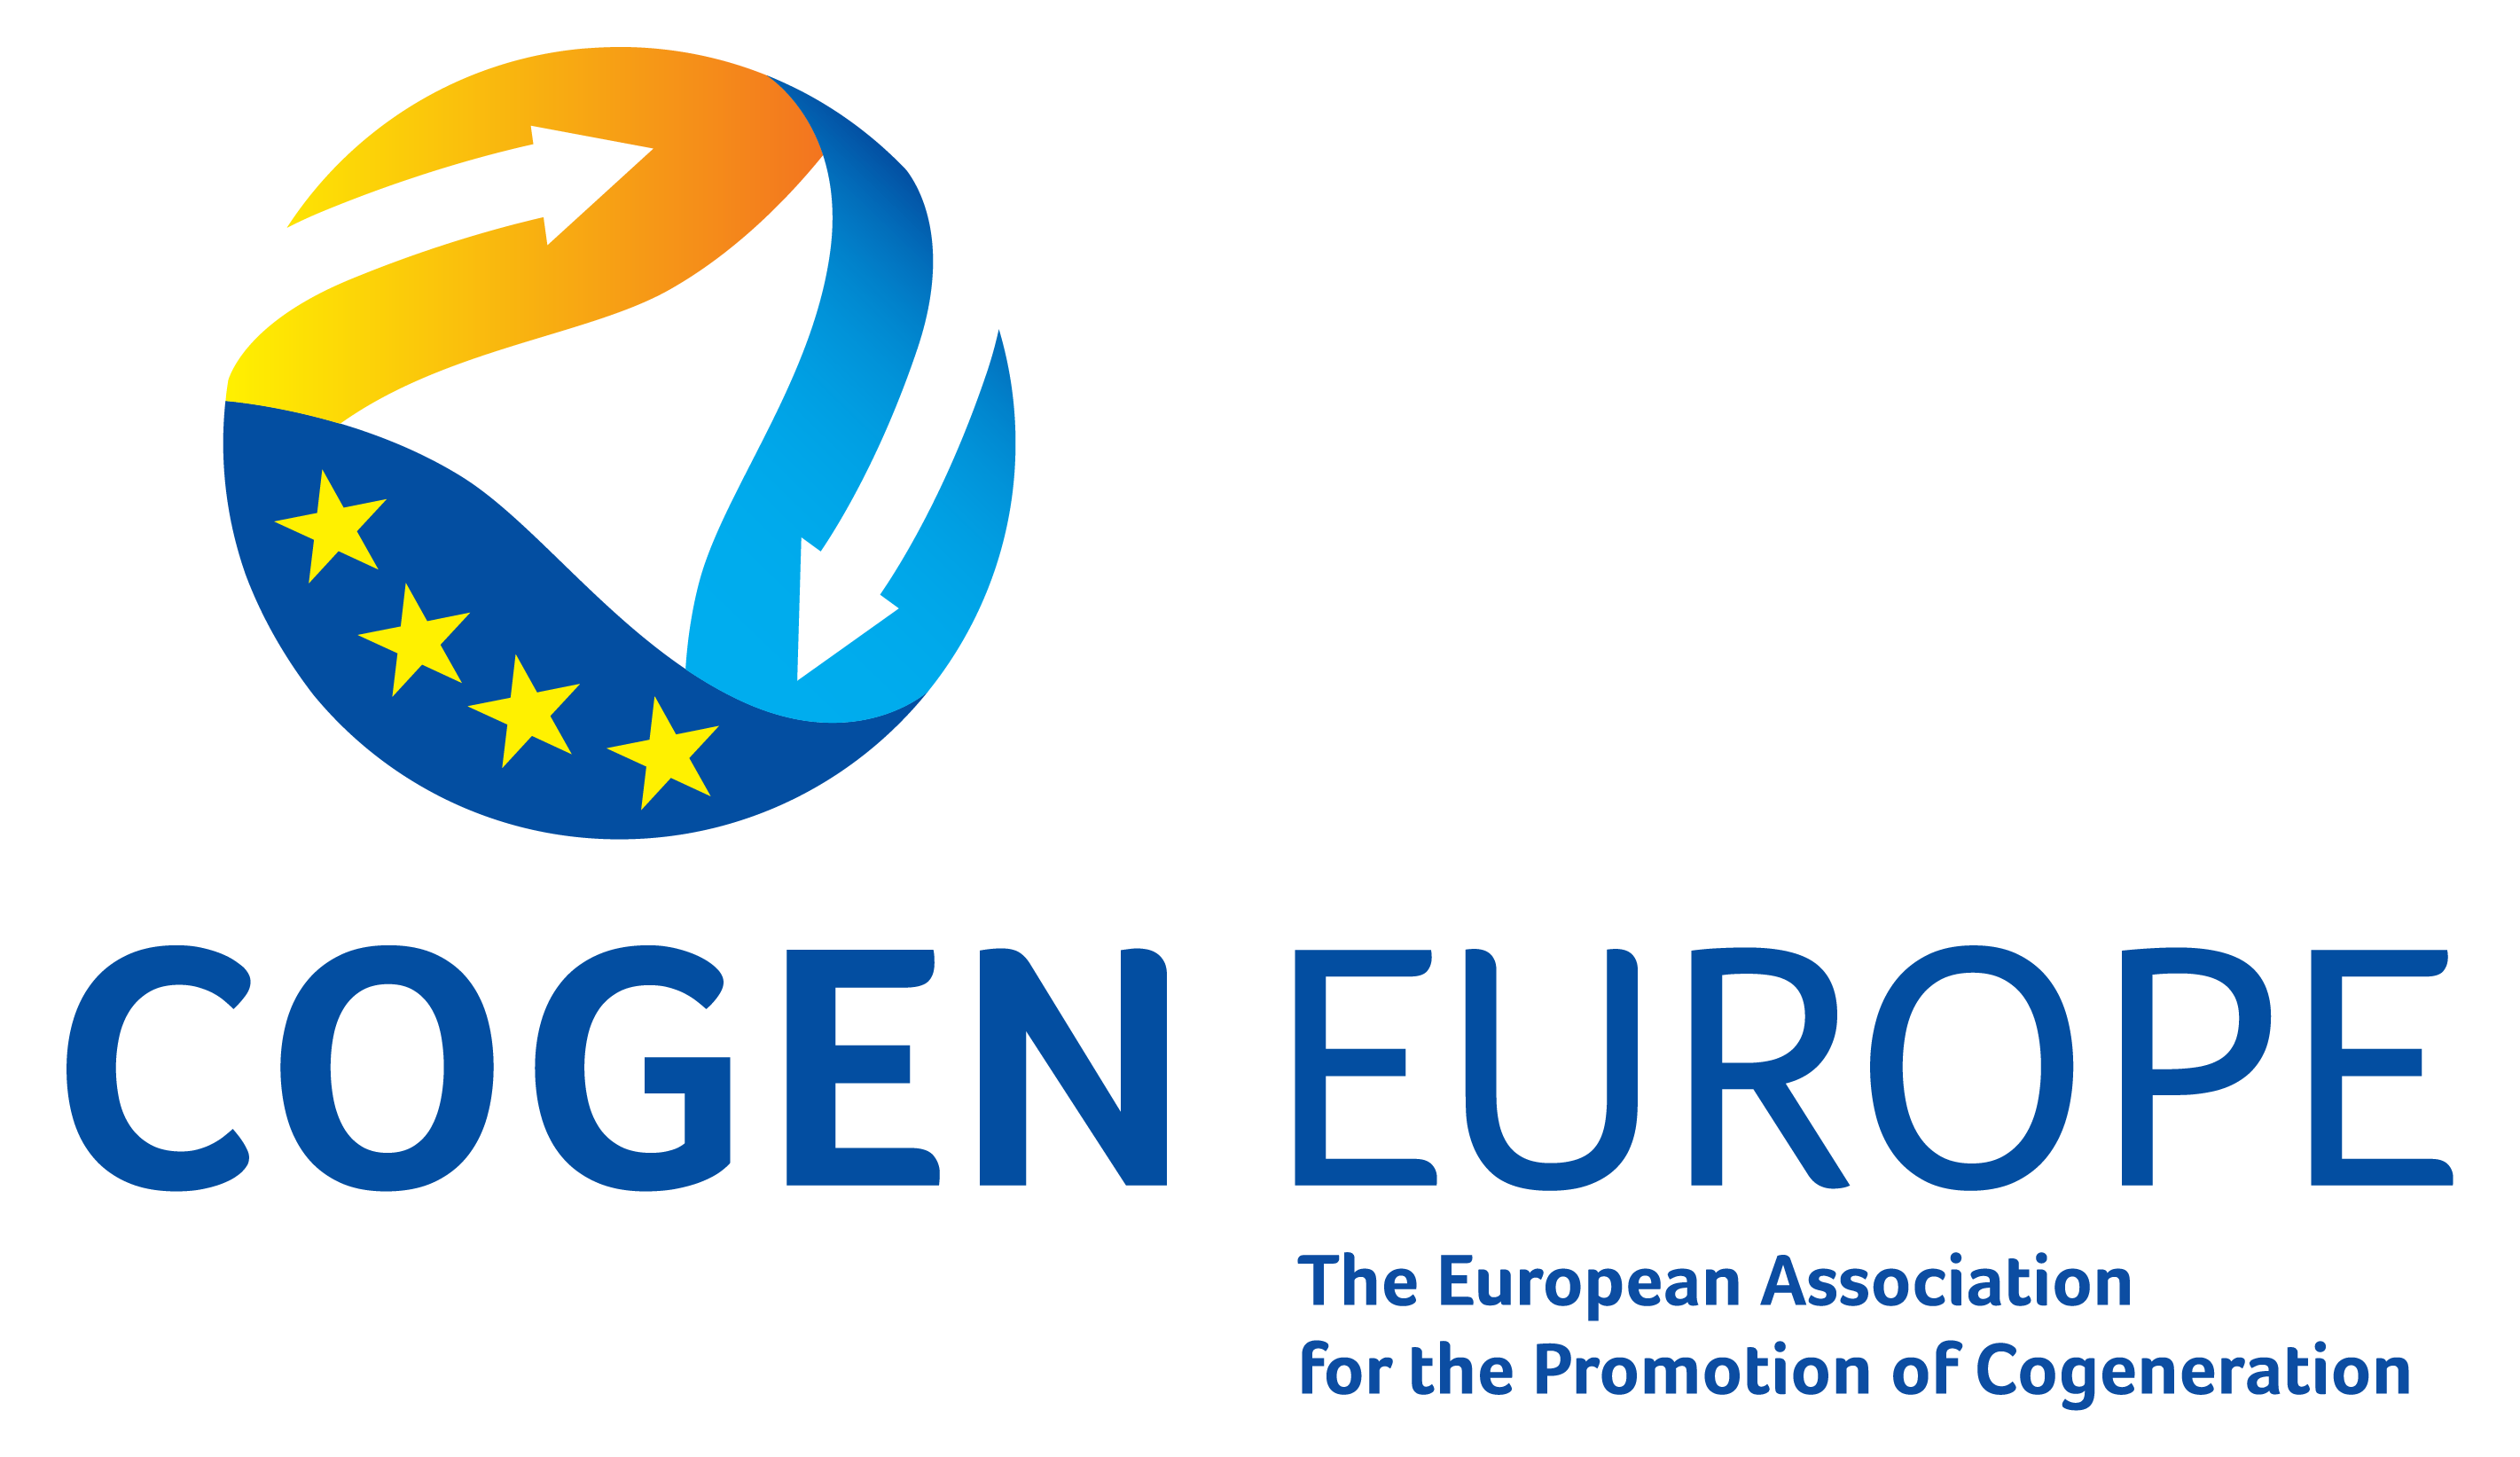 Logo Cogen